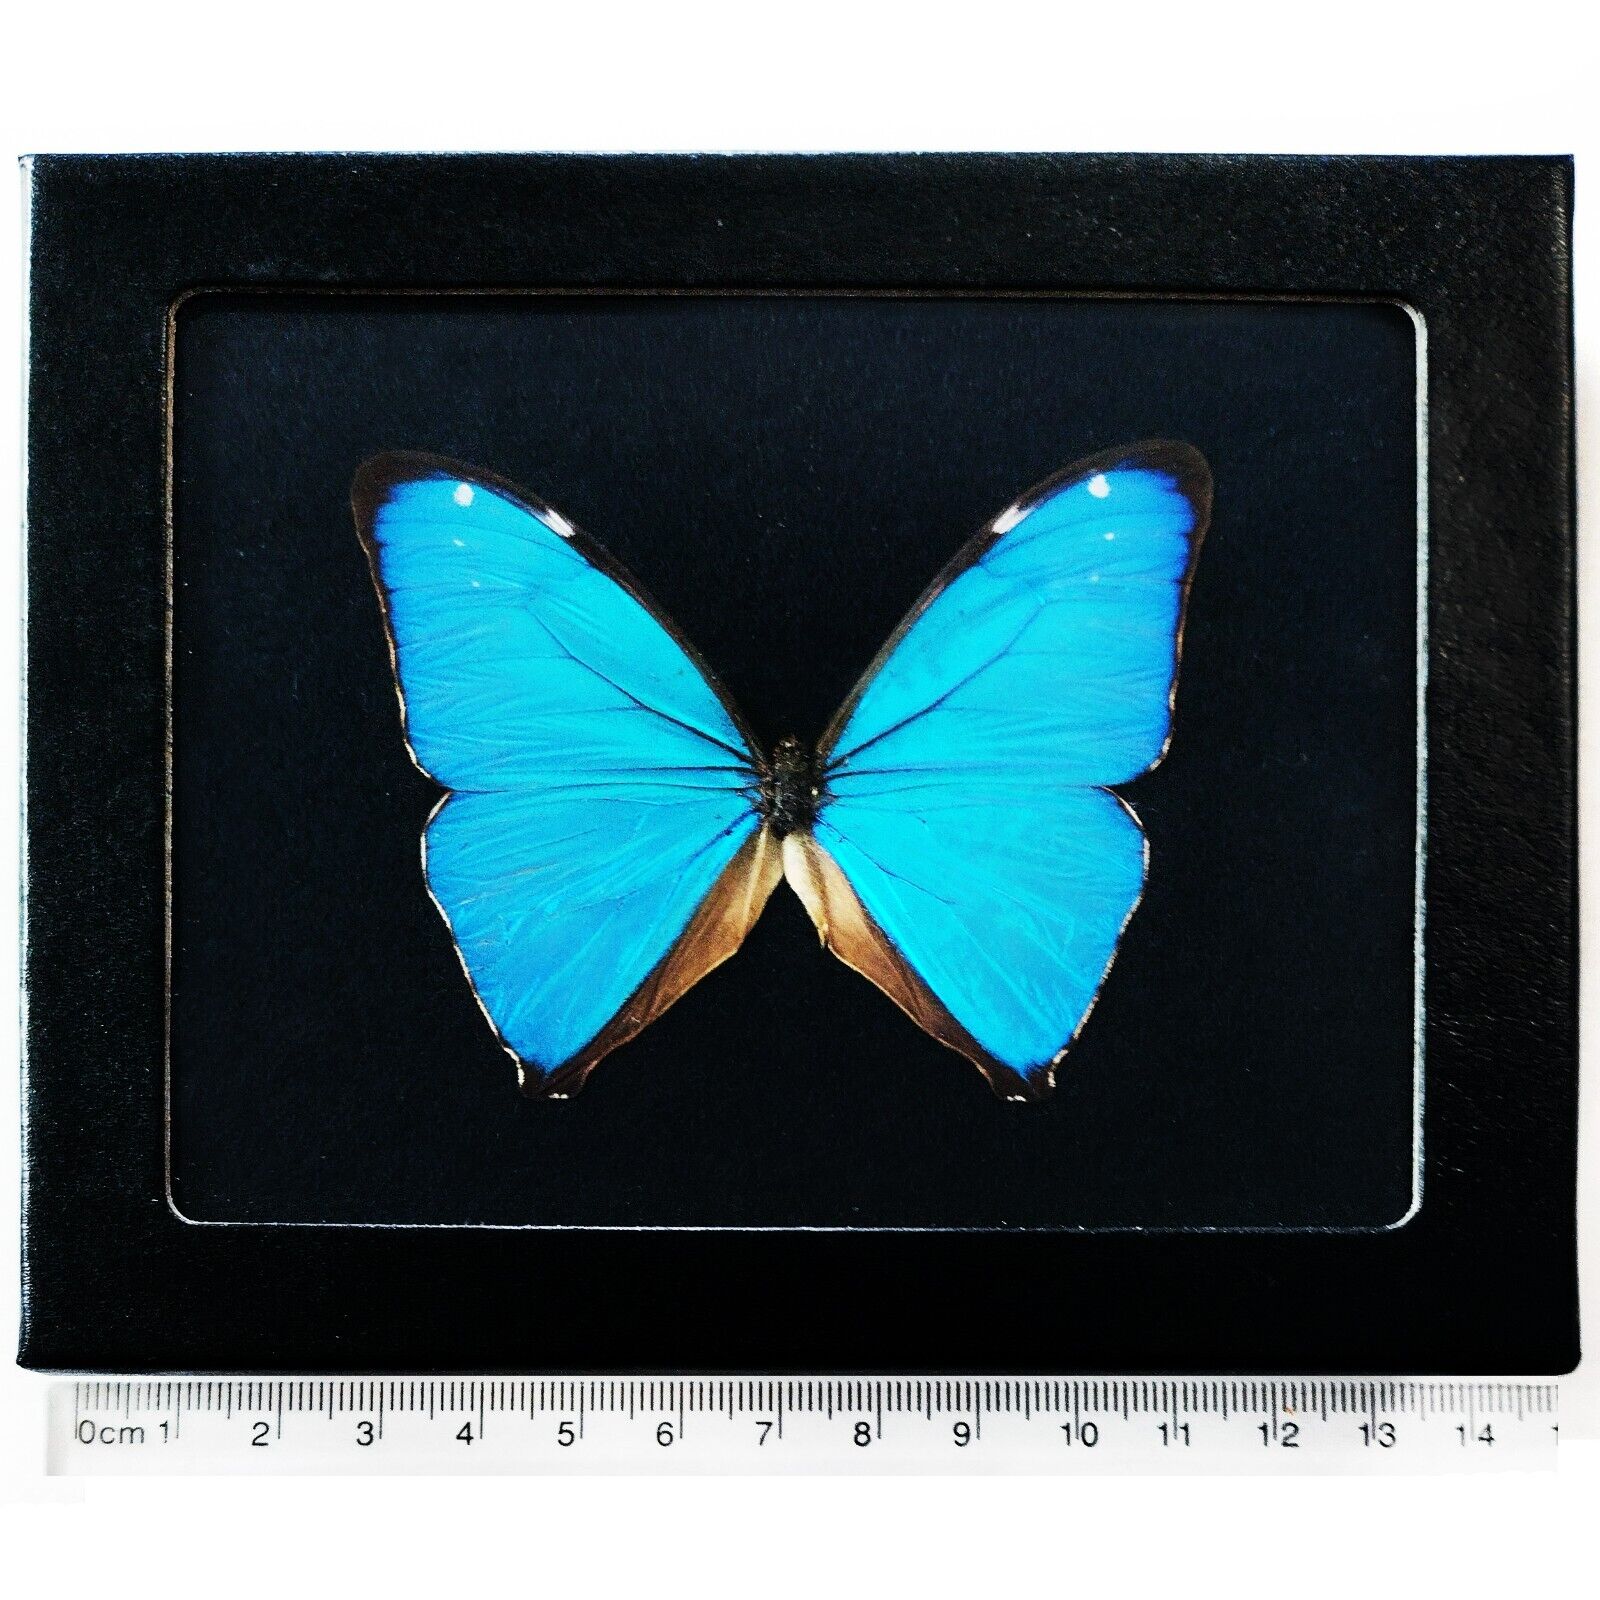 Morpho aega framed BLACK BACKGROUND blue butterfly Argentina